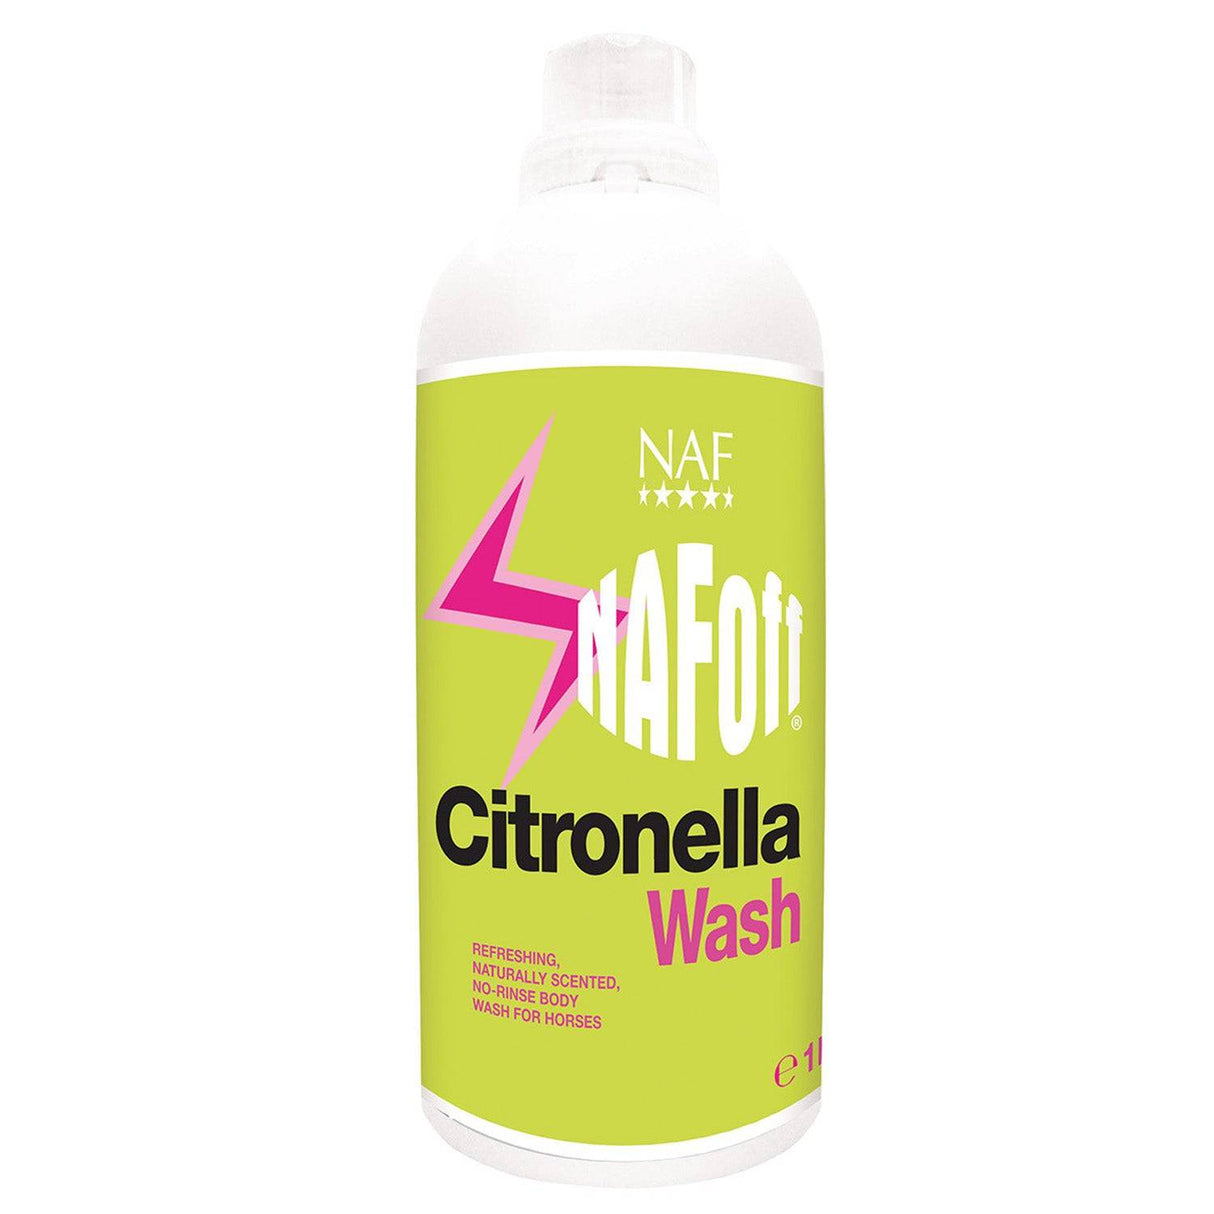 NAF Off Citronella Wash Insect Repellents 500 Ml Barnstaple Equestrian Supplies